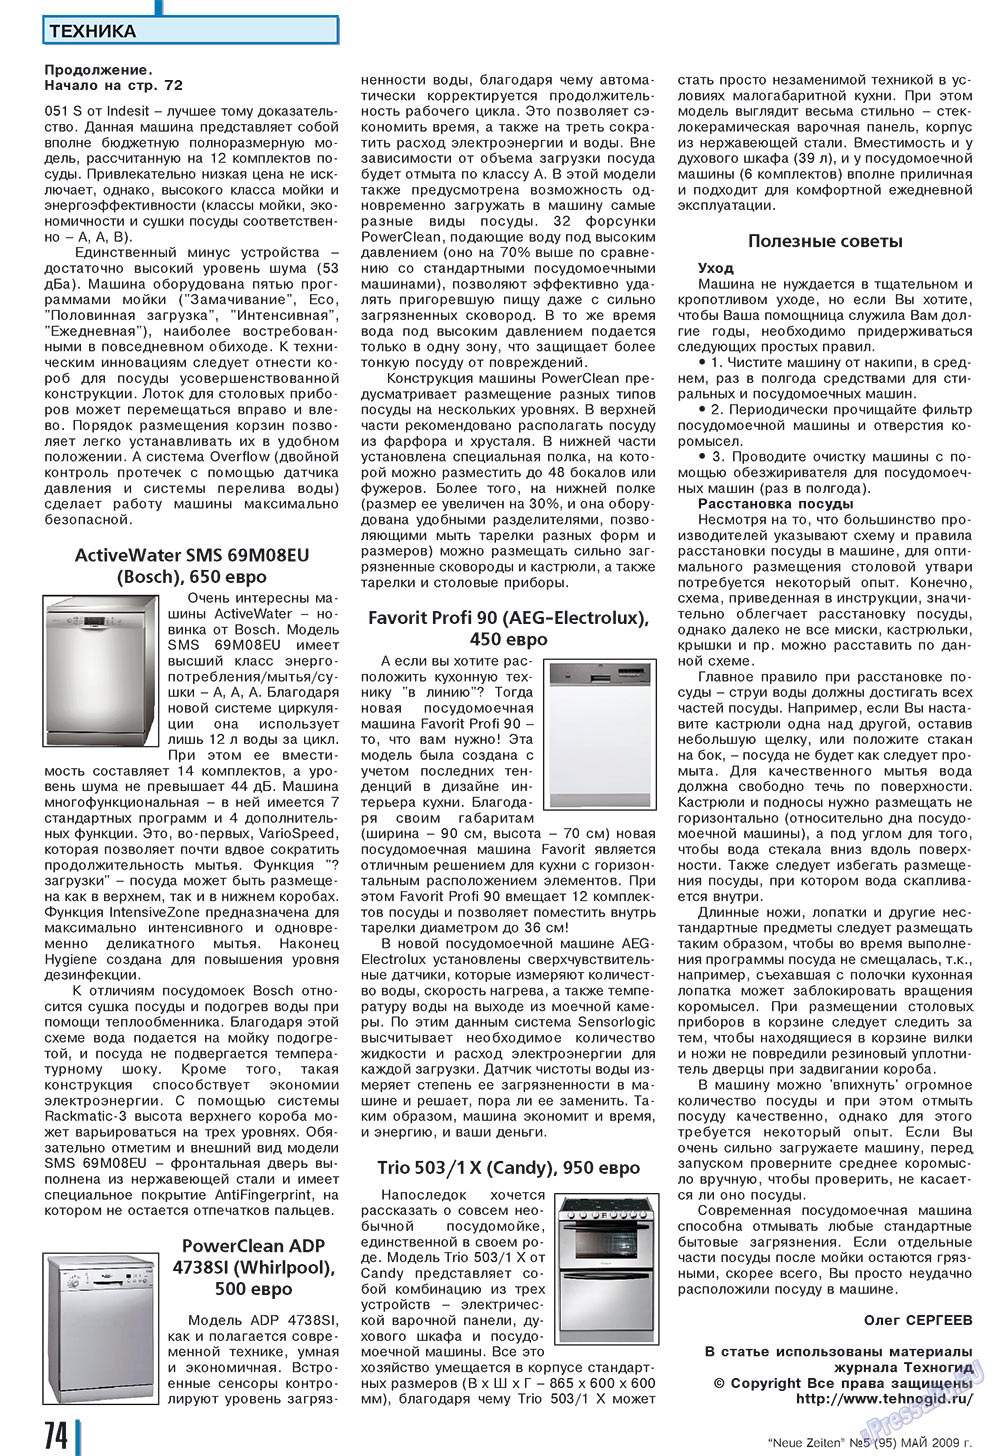 Neue Zeiten, журнал. 2009 №5 стр.74